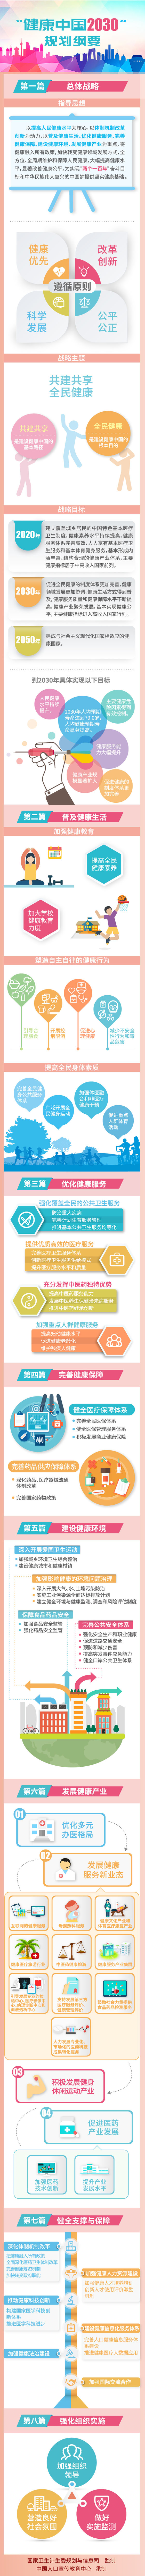 一图读懂“健康中国2030”规划纲要 